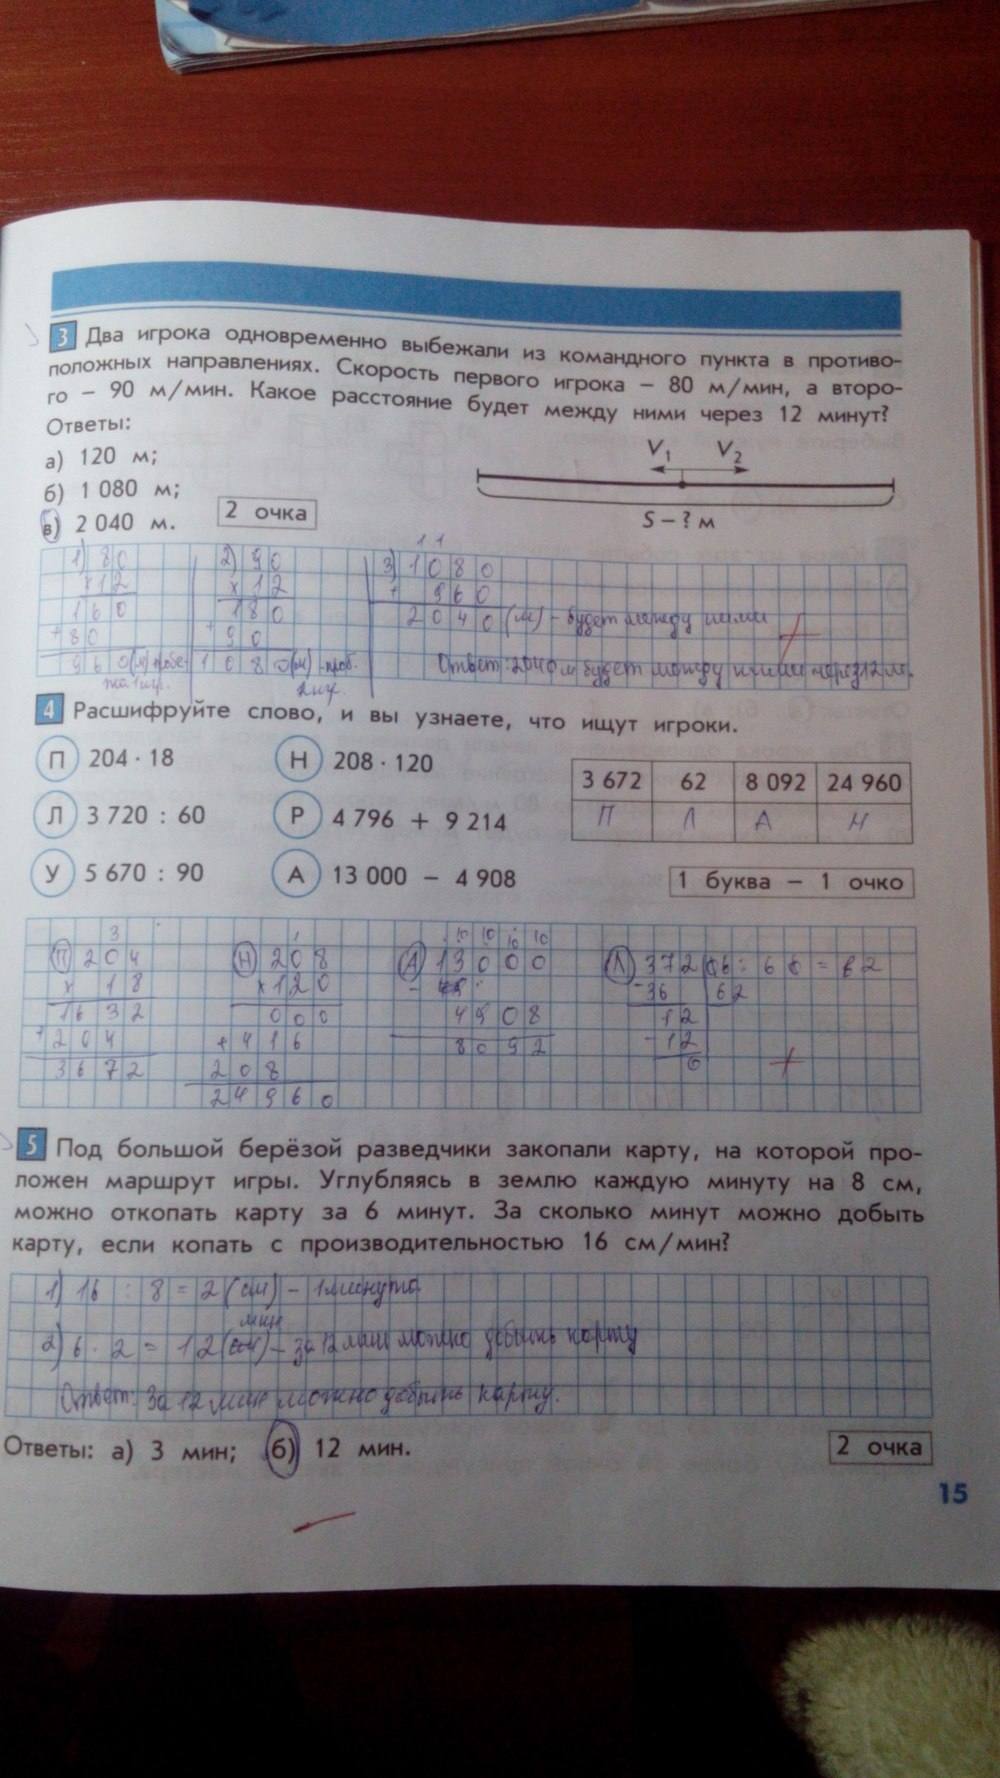 Тесты и контрольные работы, 4 класс, Козлова, Рубин, 2011, задание: стр. 15